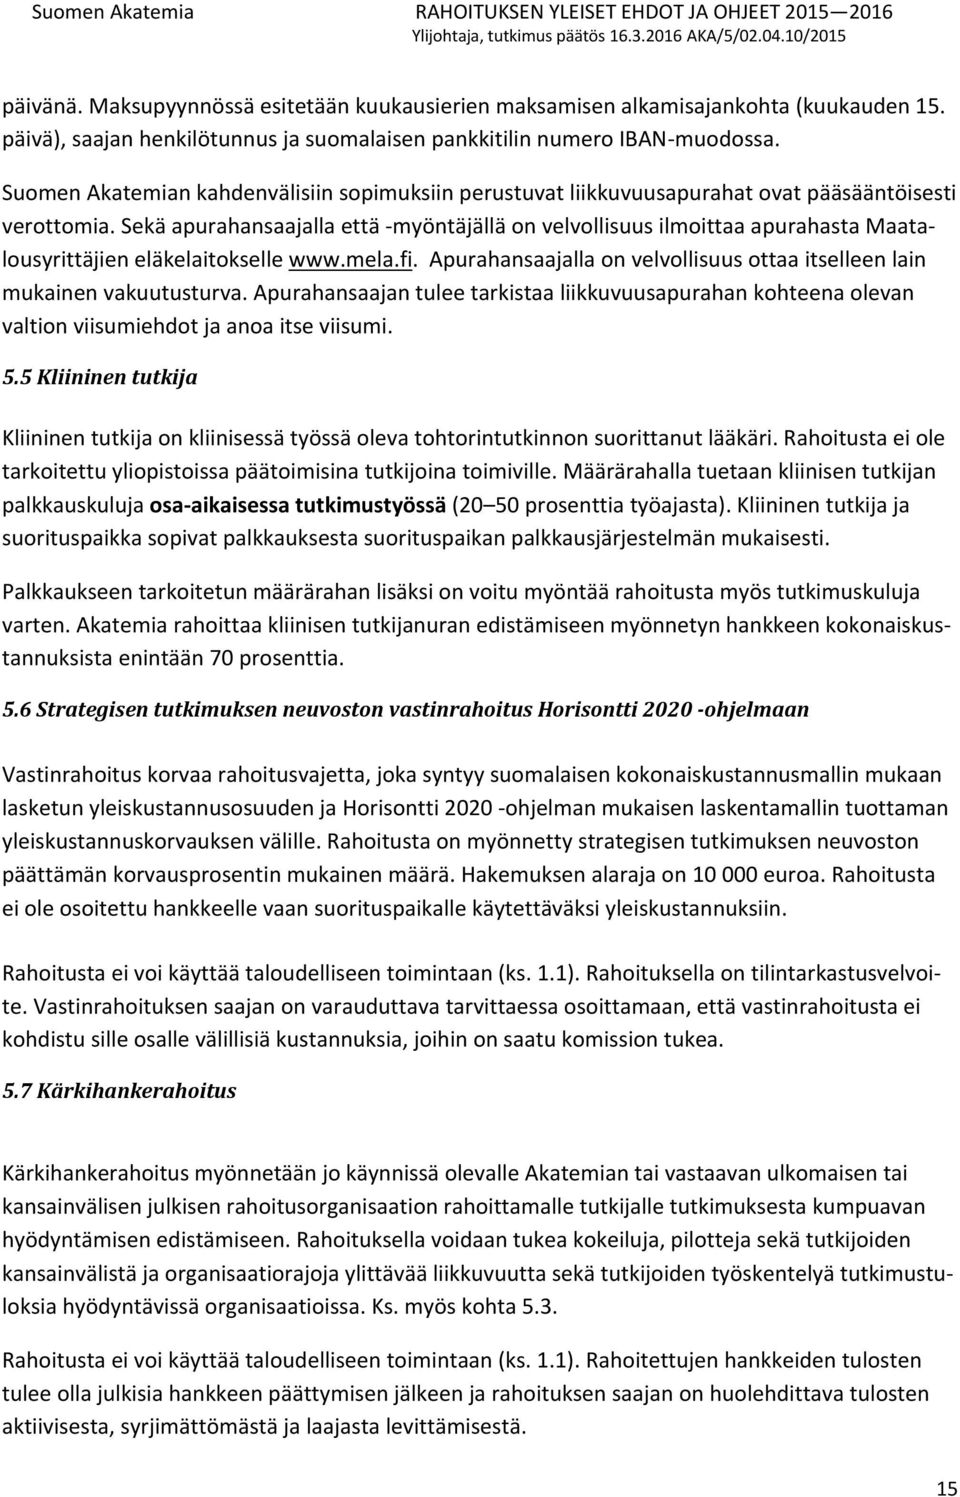 Sekä apurahansaajalla että -myöntäjällä on velvollisuus ilmoittaa apurahasta Maatalousyrittäjien eläkelaitokselle www.mela.fi.